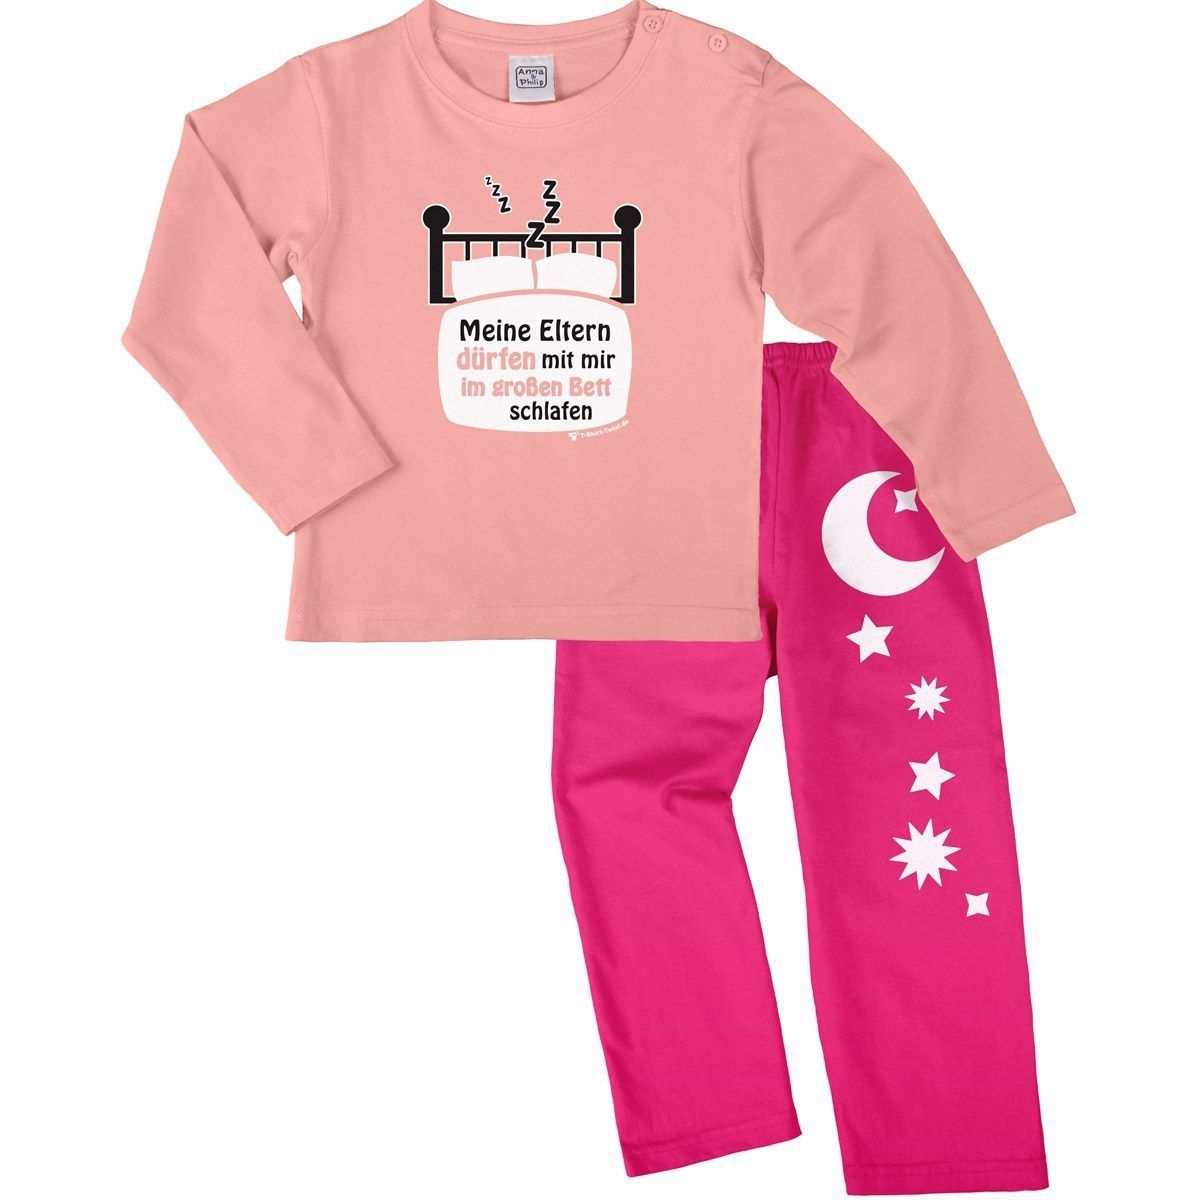 Im großen Bett schlafen Pyjama Set rosa / pink 110 / 116